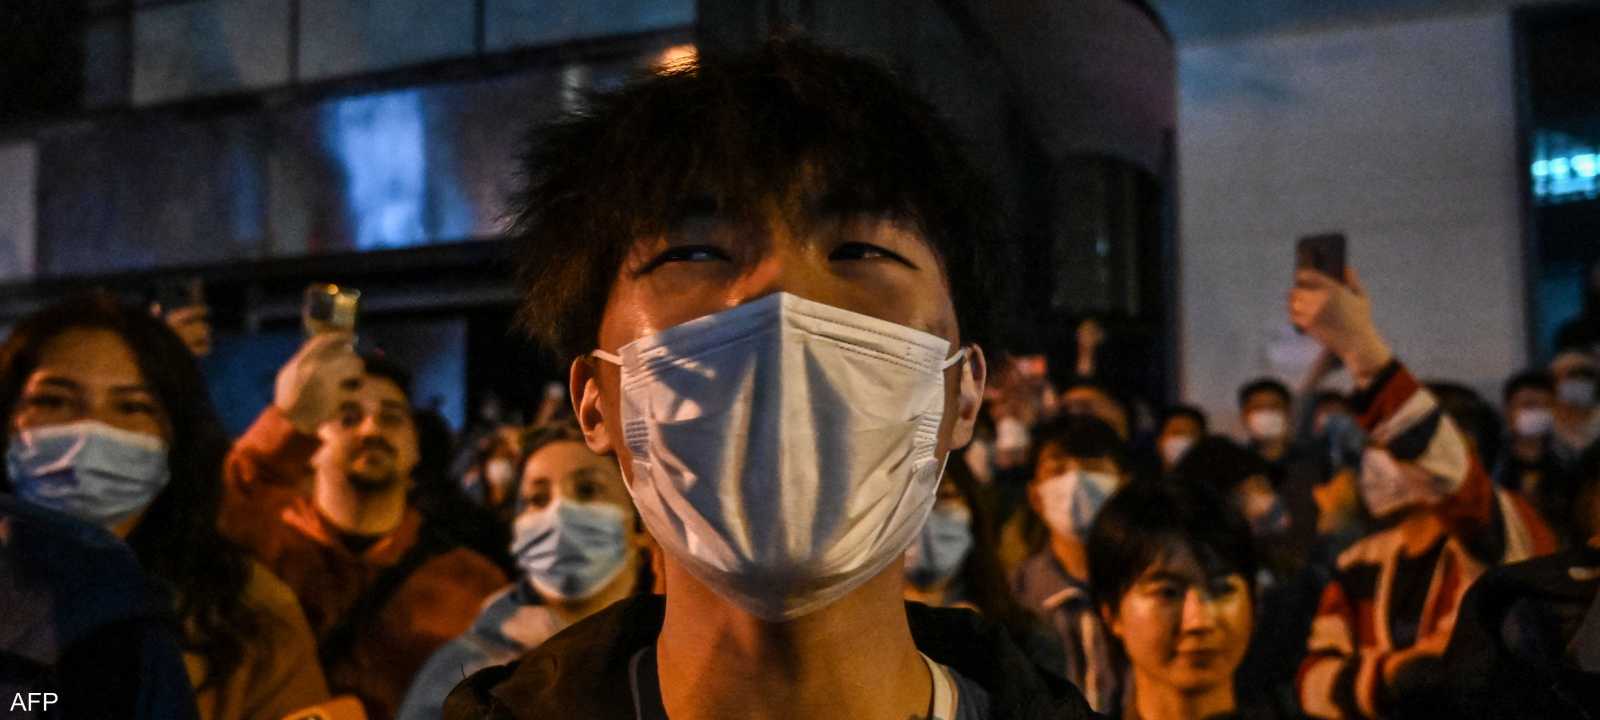 احتجاجات في الصين ضد قيود كورونا الصارمة